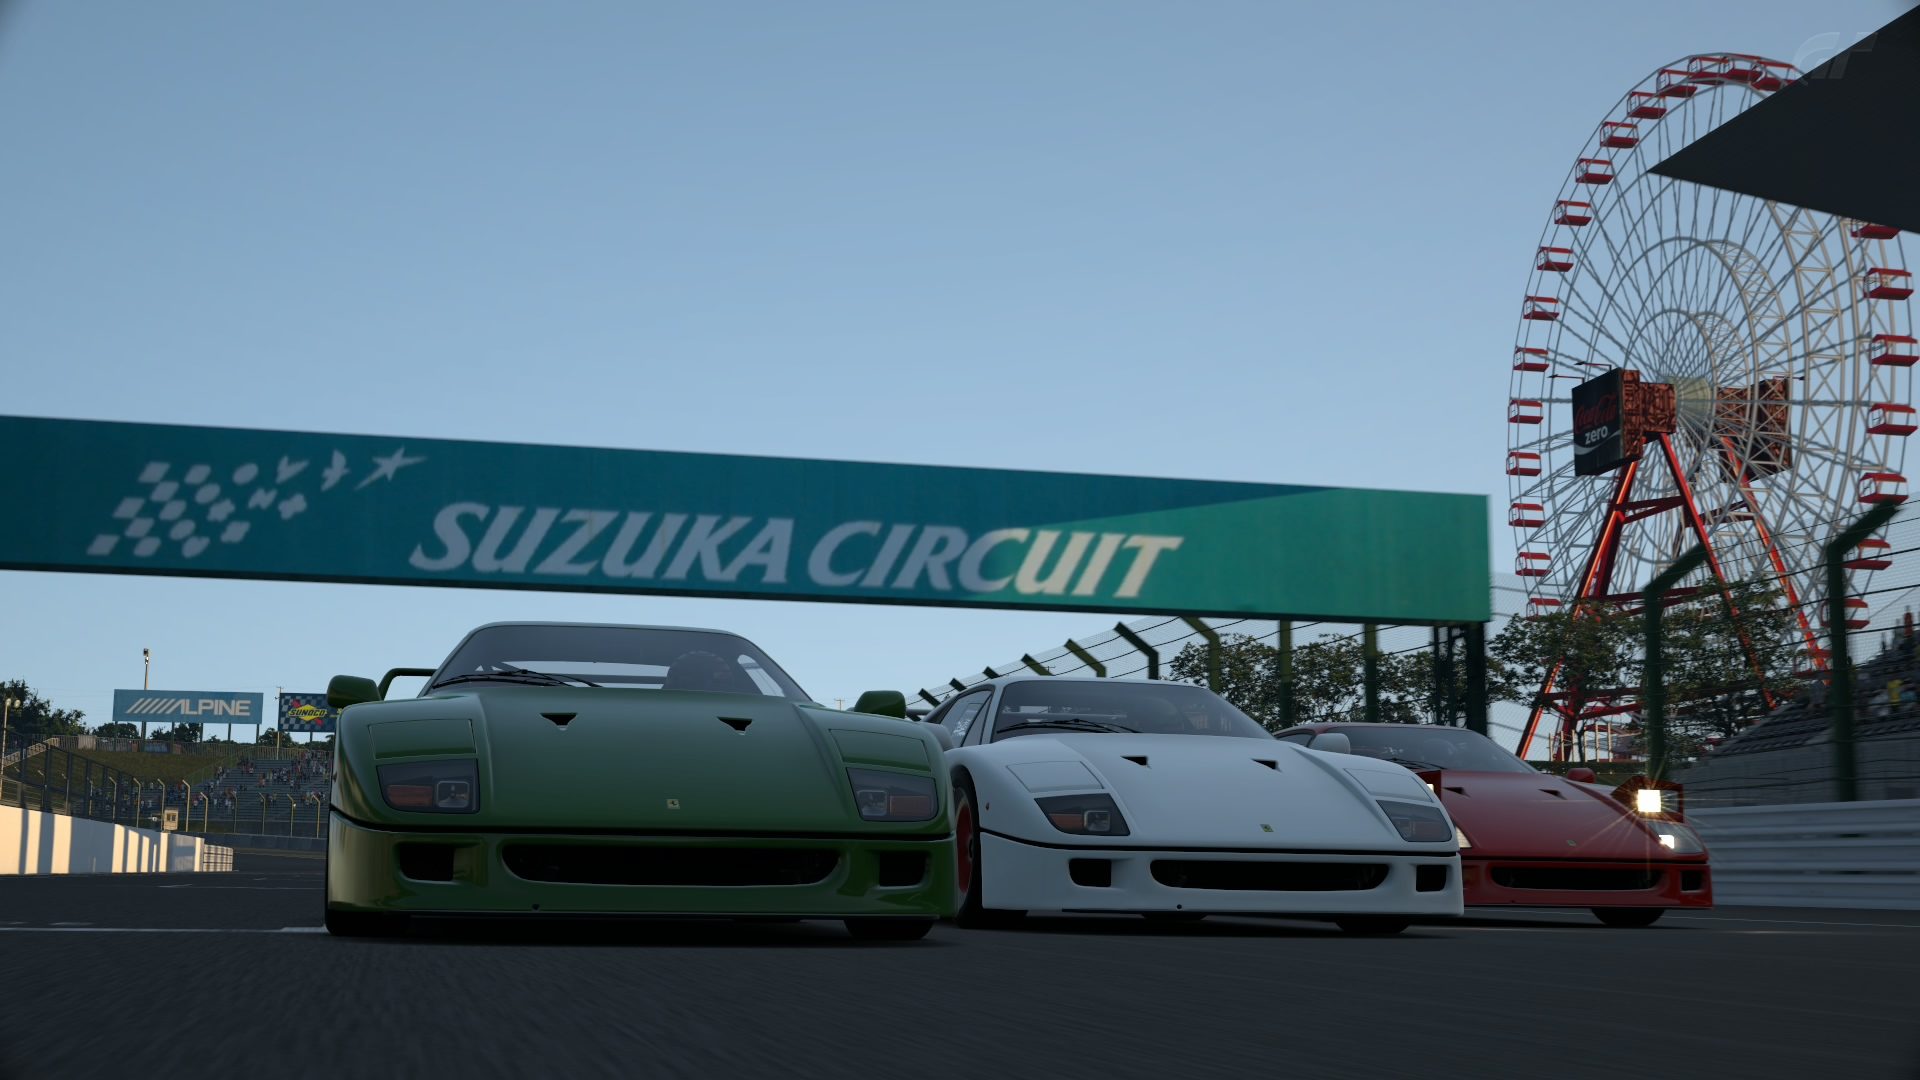 Suzuka Circuit 2014_76